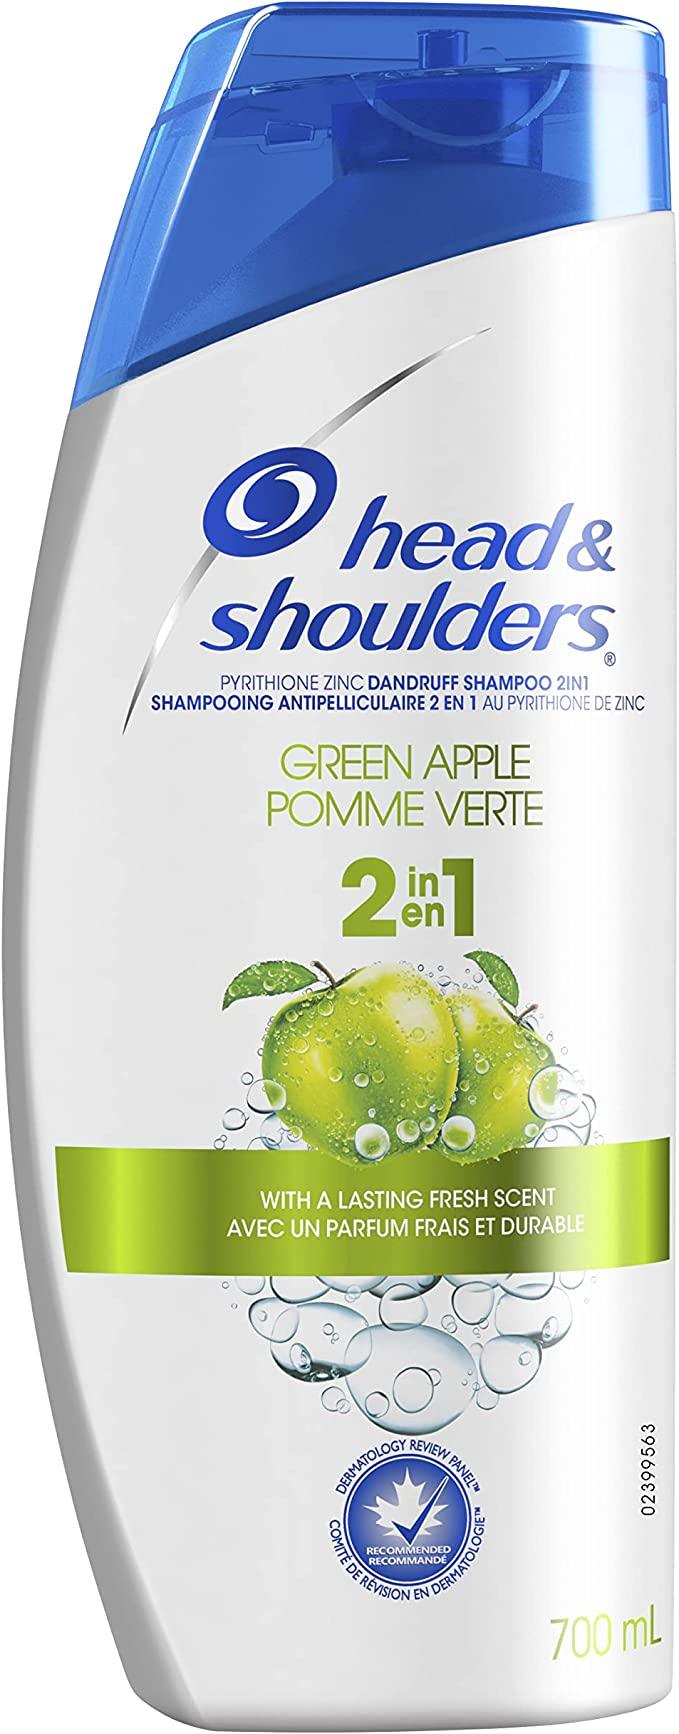 Head & Shoulders Dandruff Shampoo Green Apple - Quecan